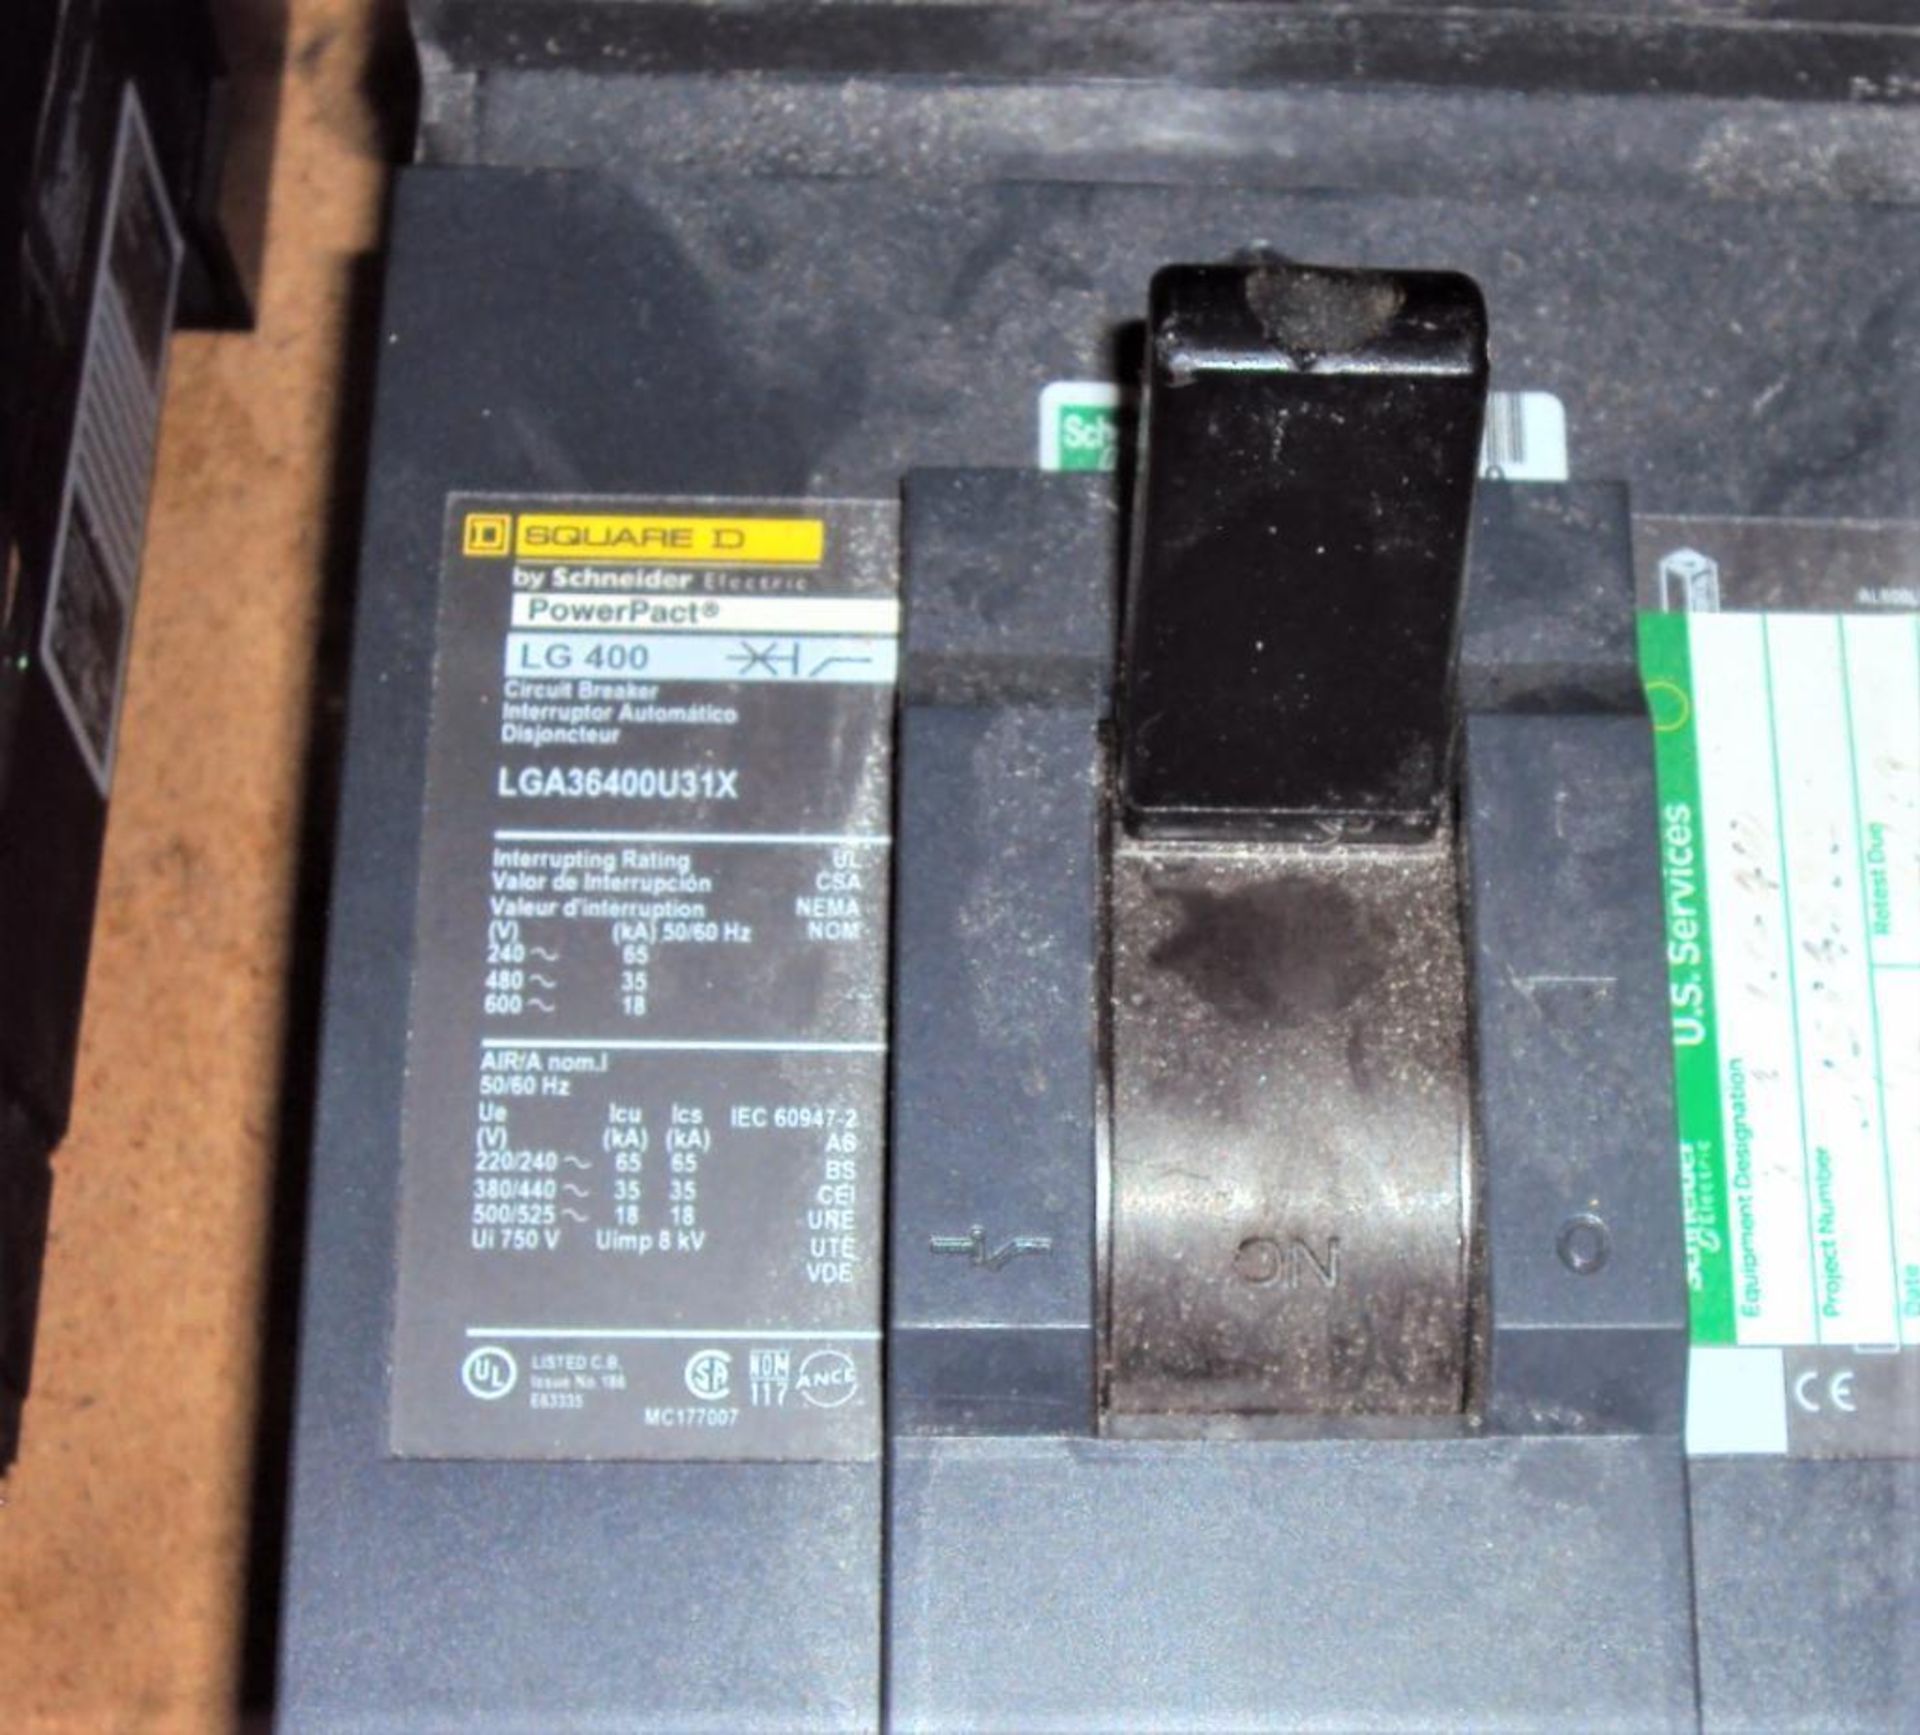 (2) Square D JJ250 & (1) LG400 PowerPact Circuit Breakers - Image 3 of 4